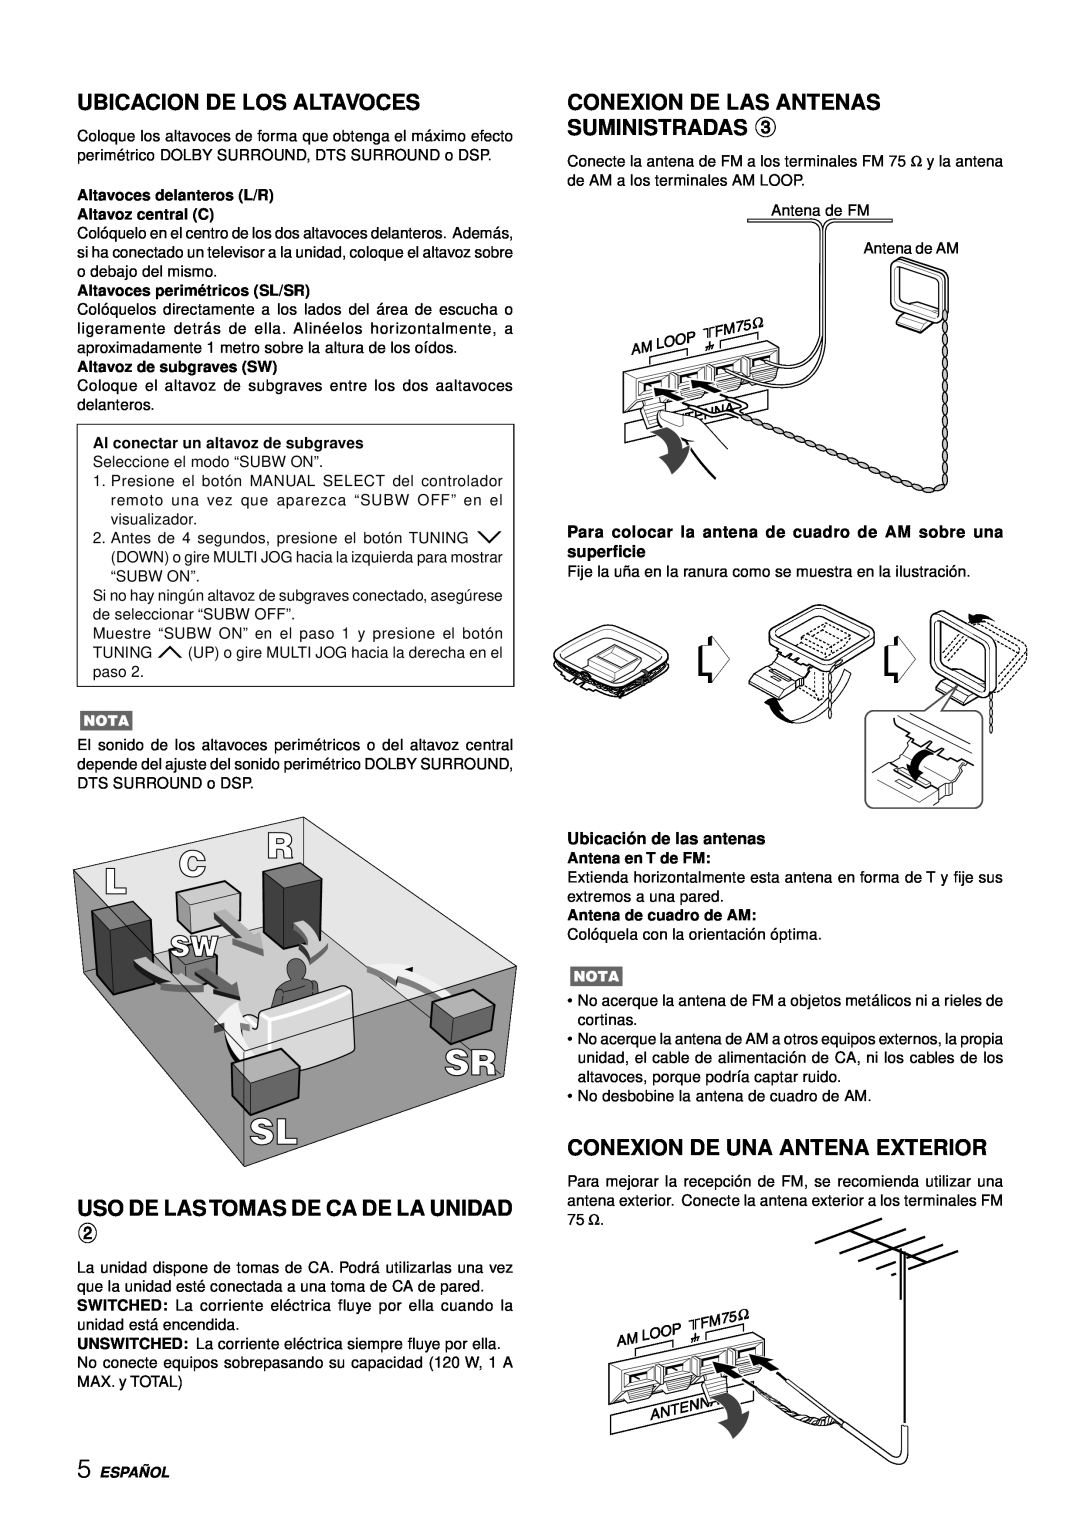 Aiwa AV-D77 manual Ubicacion De Los Altavoces, Uso De Las Tomas De Ca De La Unidad, Conexion De Las Antenas Suministradas 